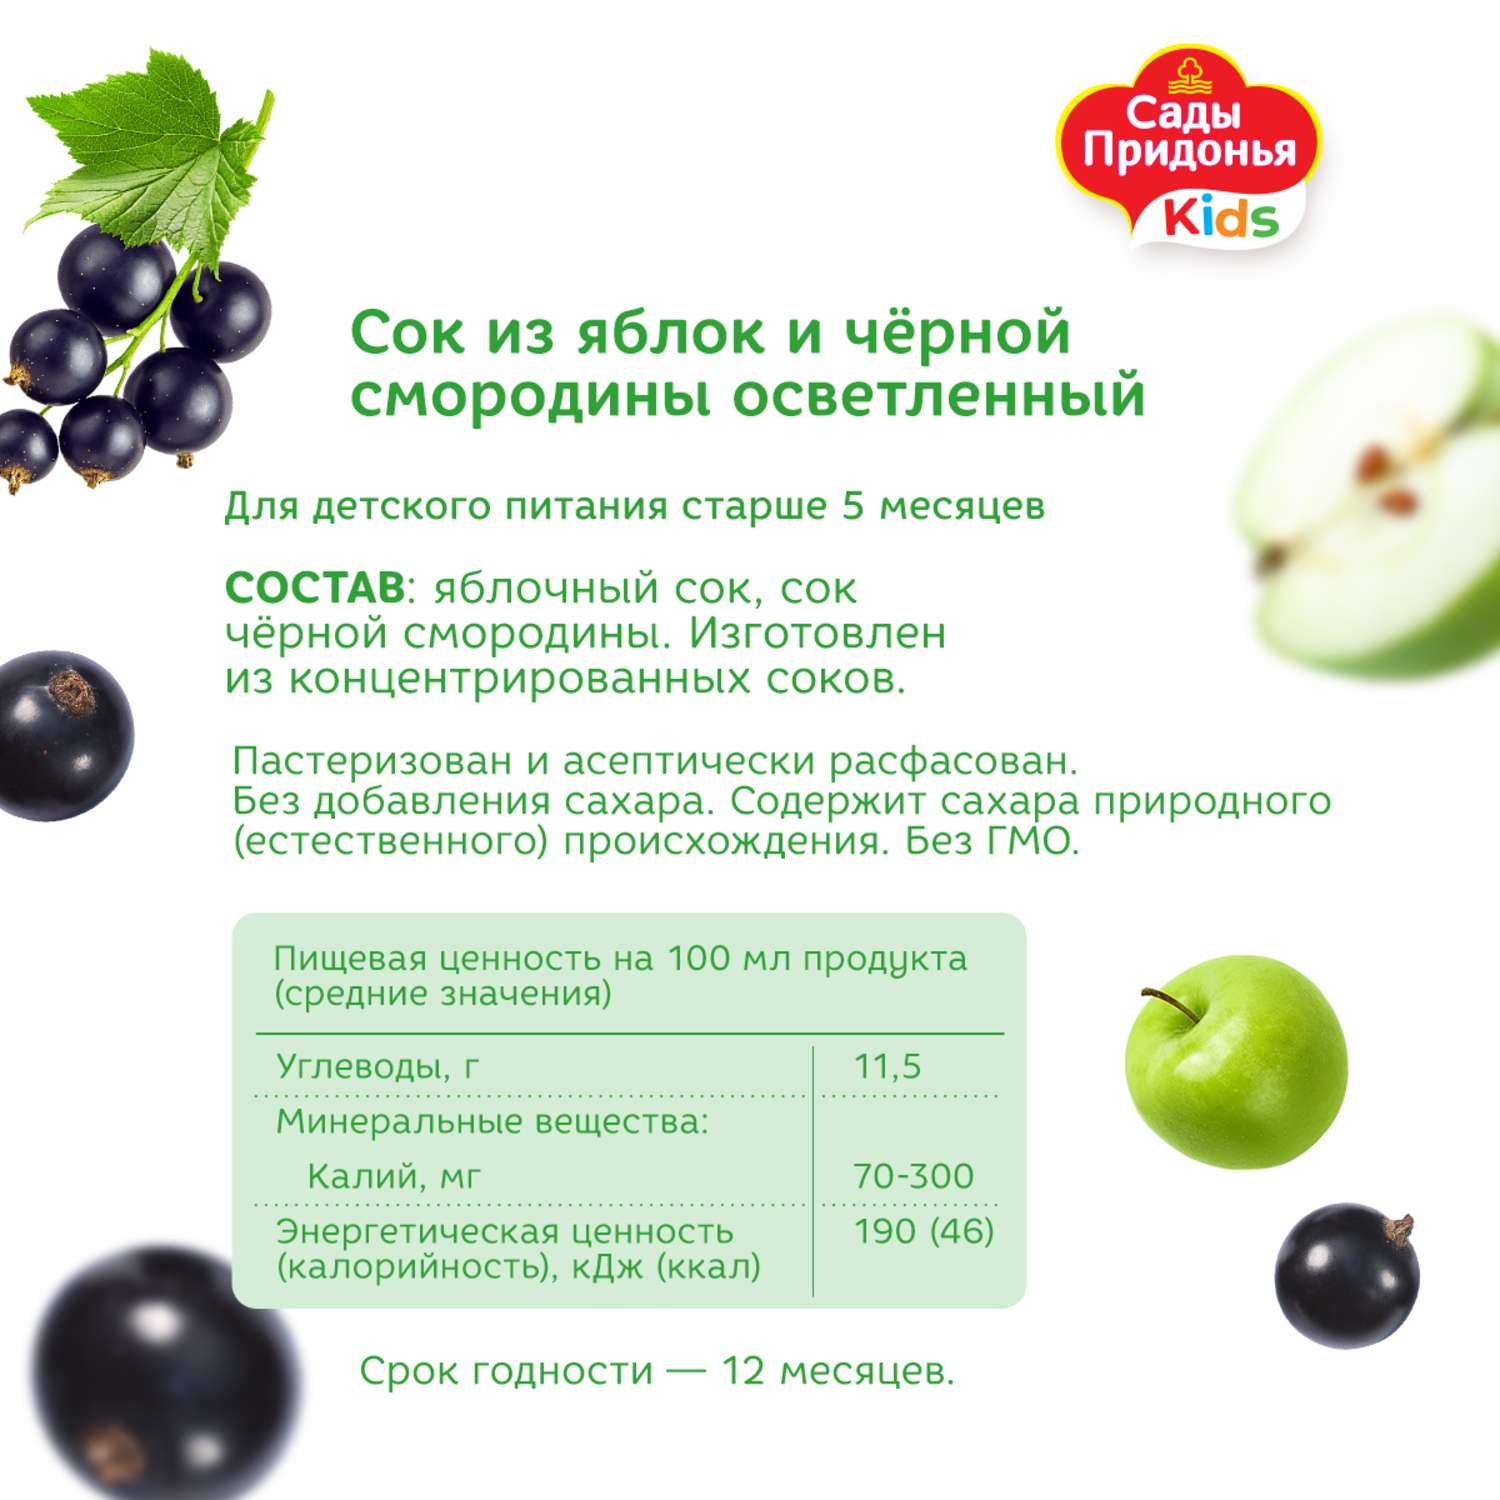 Сок Сады Придонья яблоко-черная смородина 0.2л с 5месяцев - фото 3